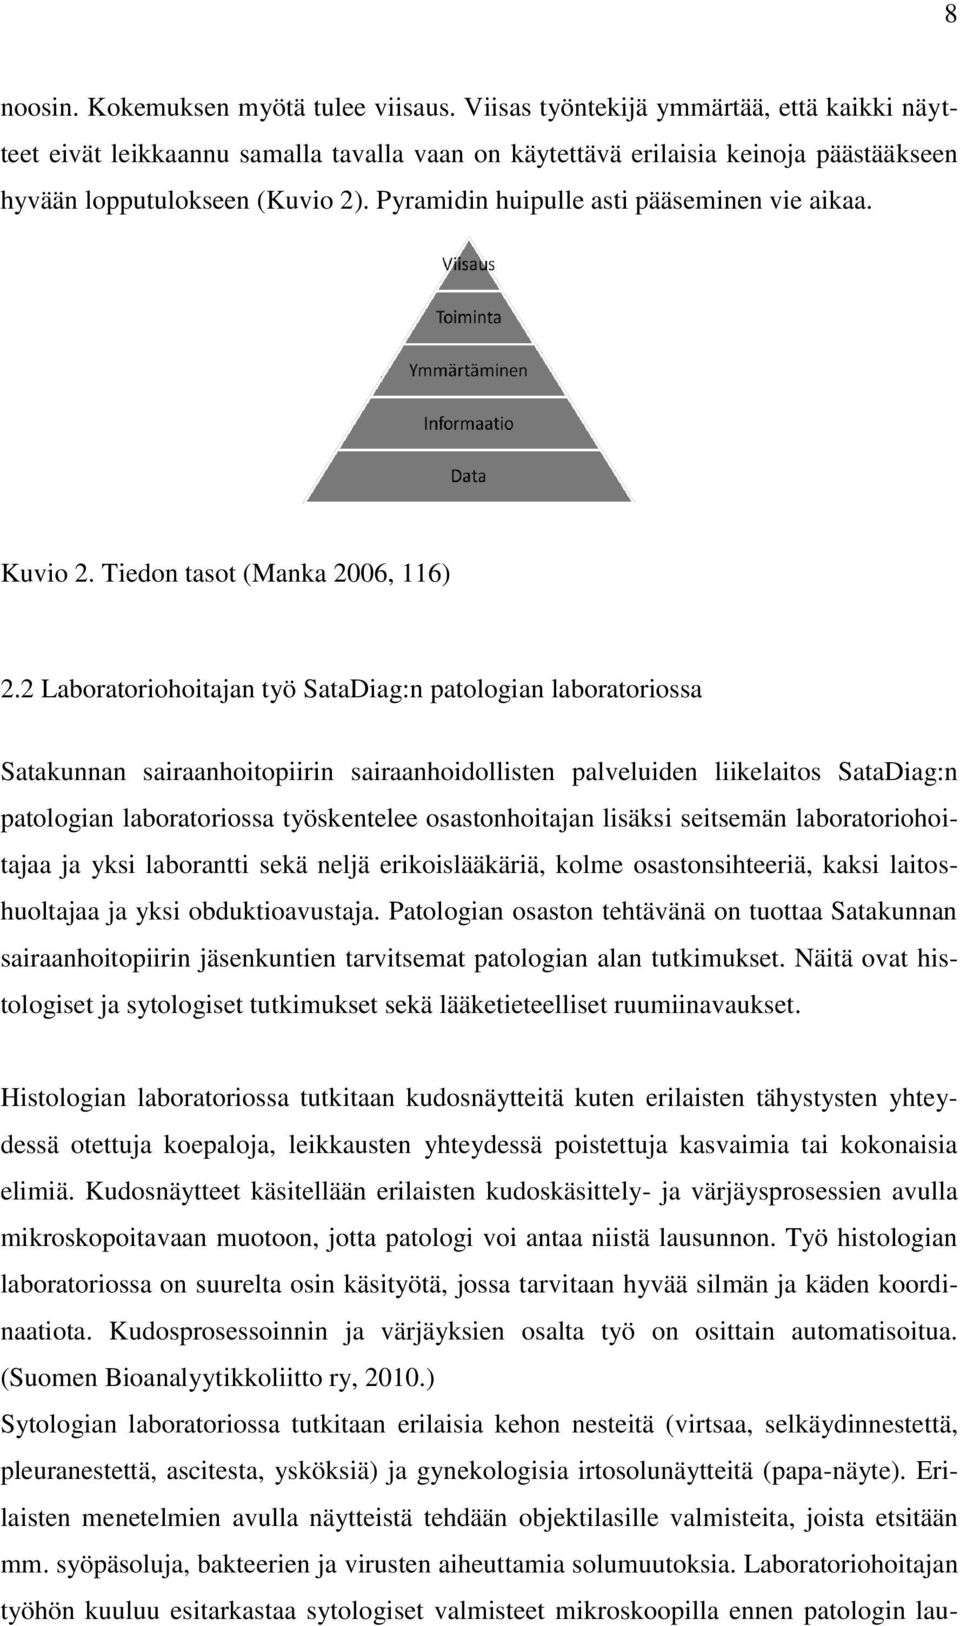 Pyramidin huipulle asti pääseminen vie aikaa. Kuvio 2. Tiedon tasot (Manka 2006, 116) 2.